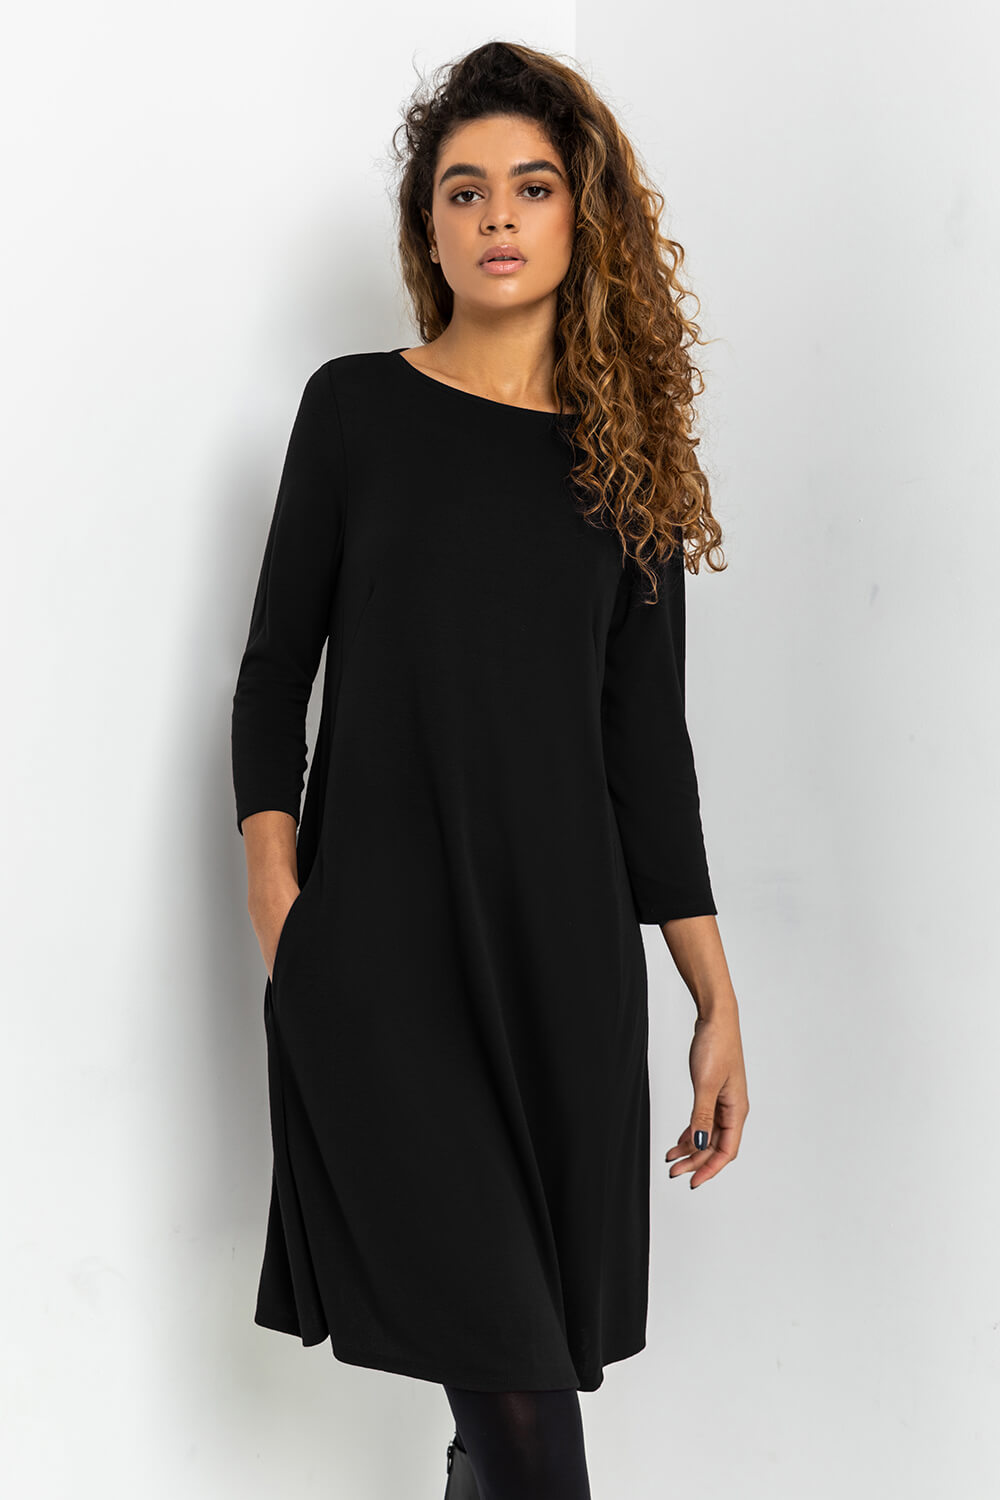 Black A-Line Pocket Detail Swing Dress, Image 2 of 5